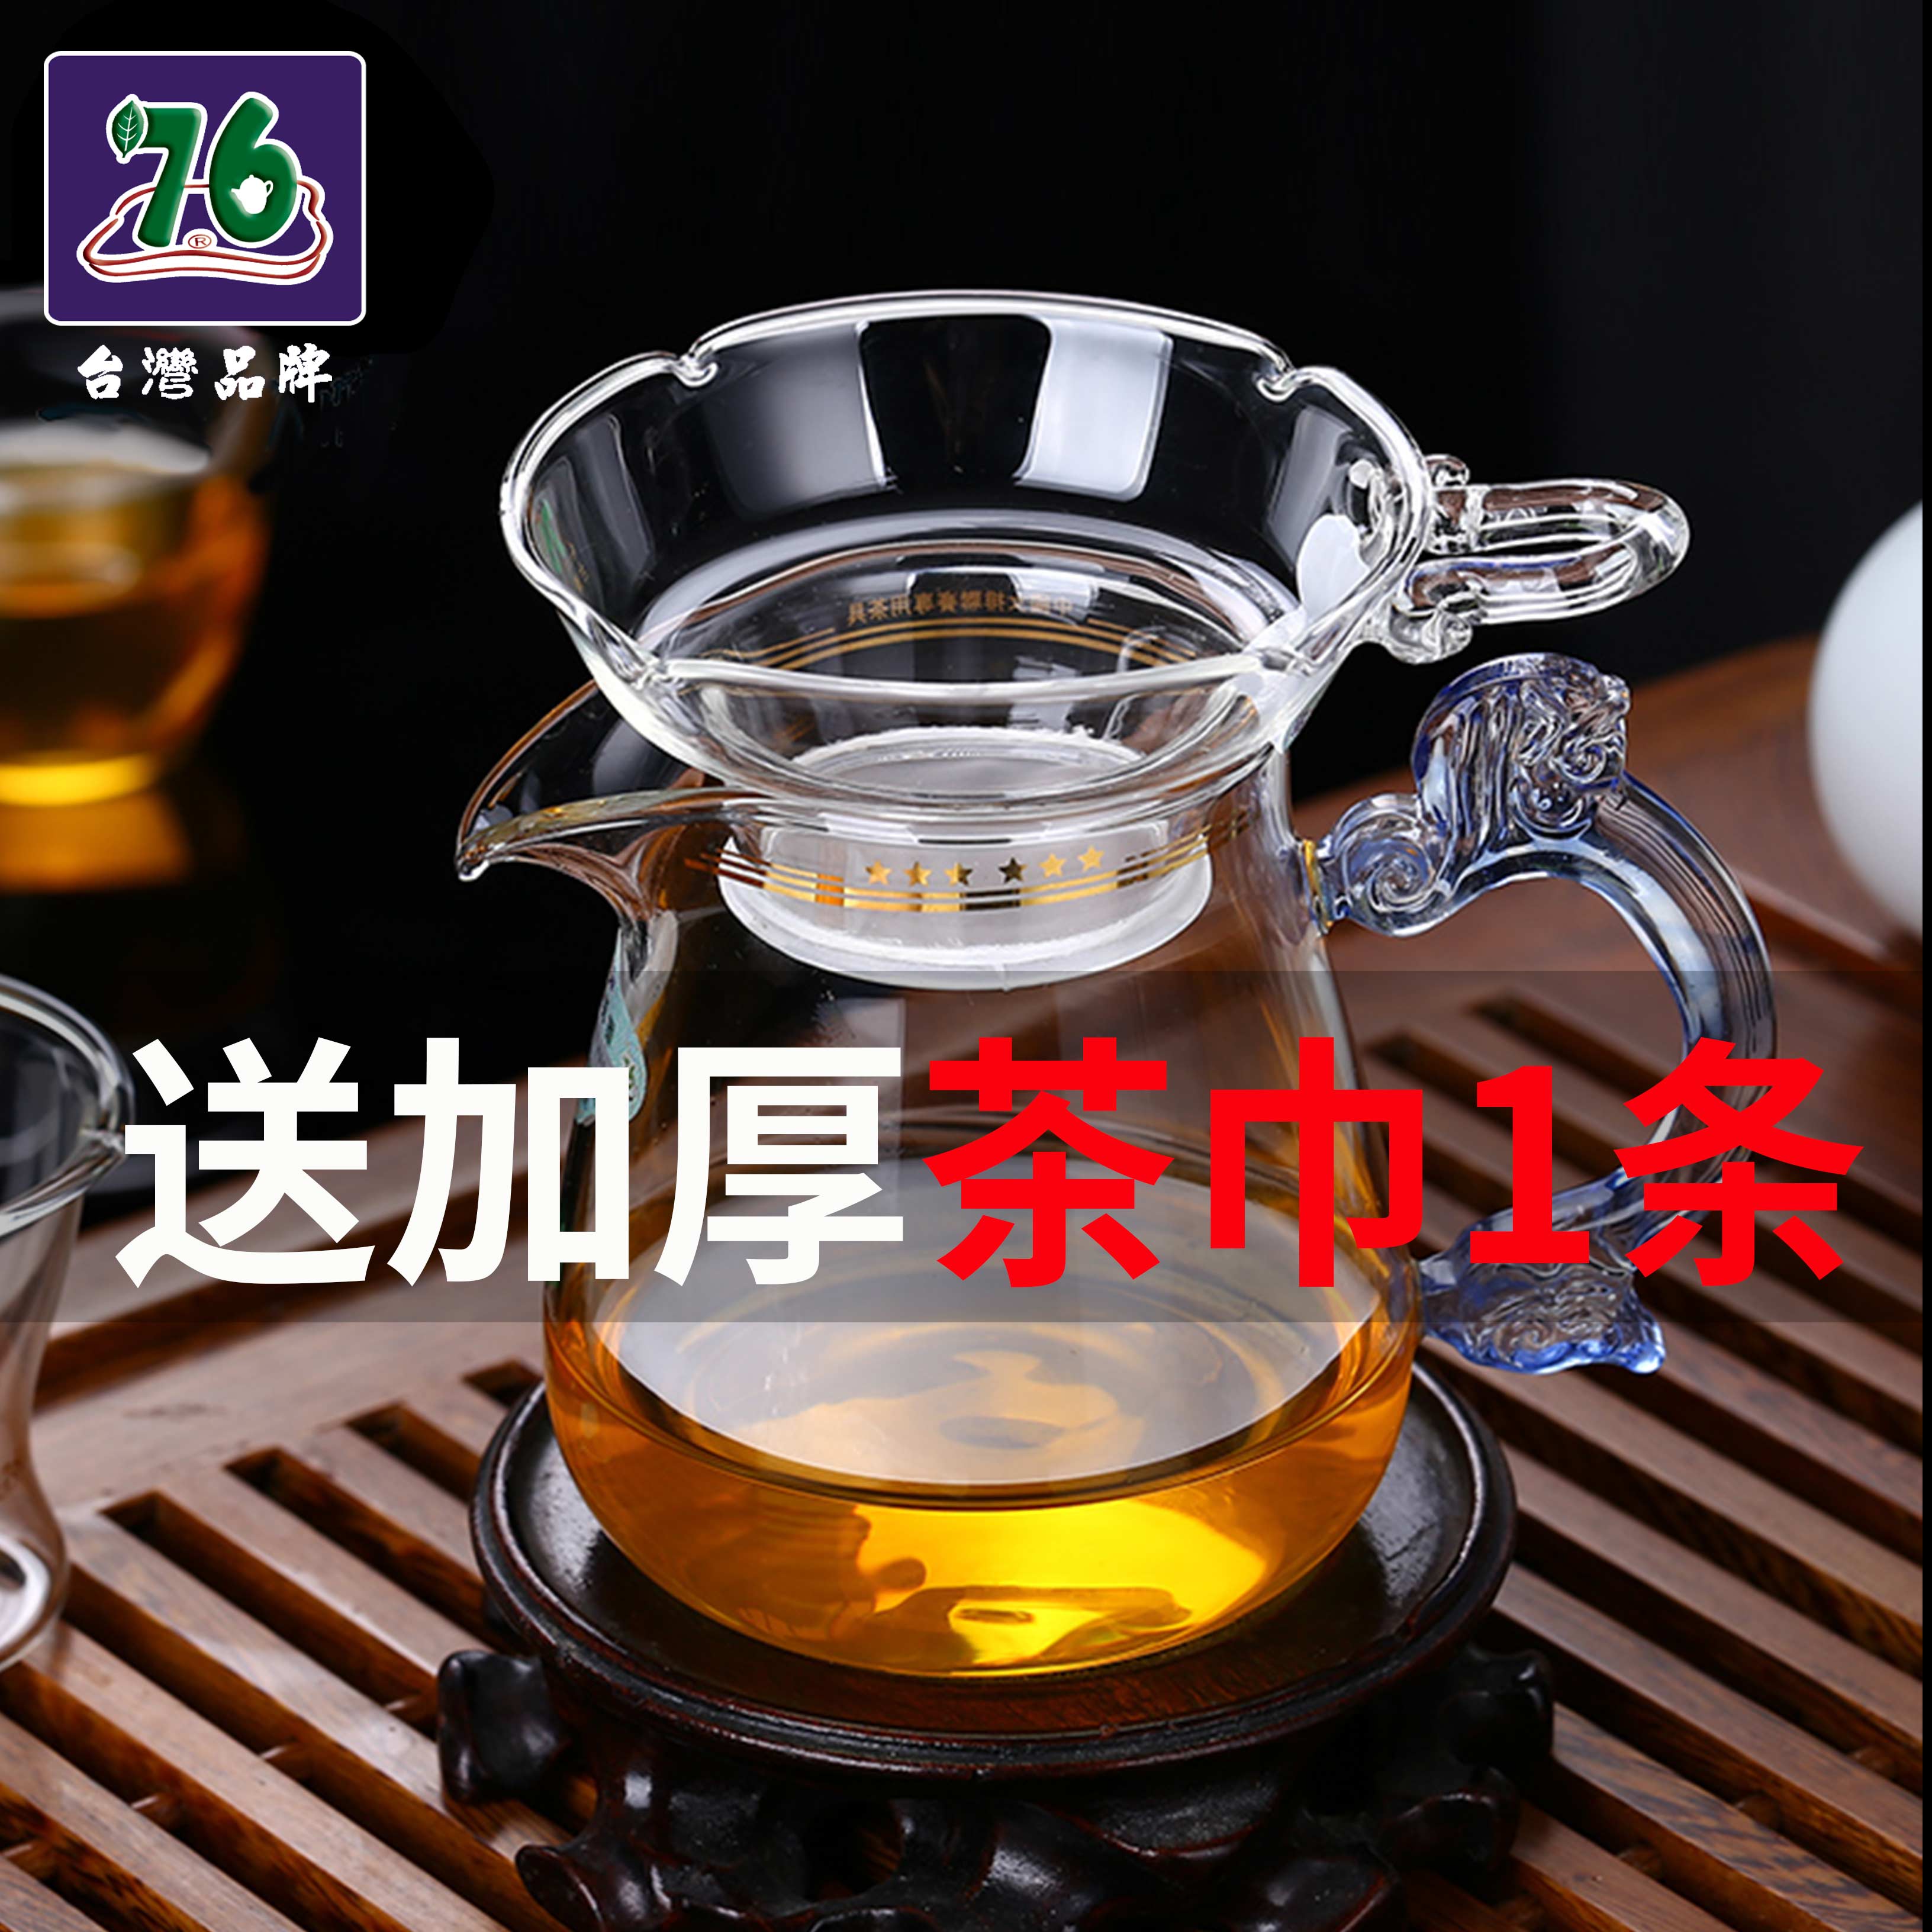 台湾76玻璃茶漏茶滤超细茶叶过滤网泡茶器滤茶器茶隔公道杯小茶具